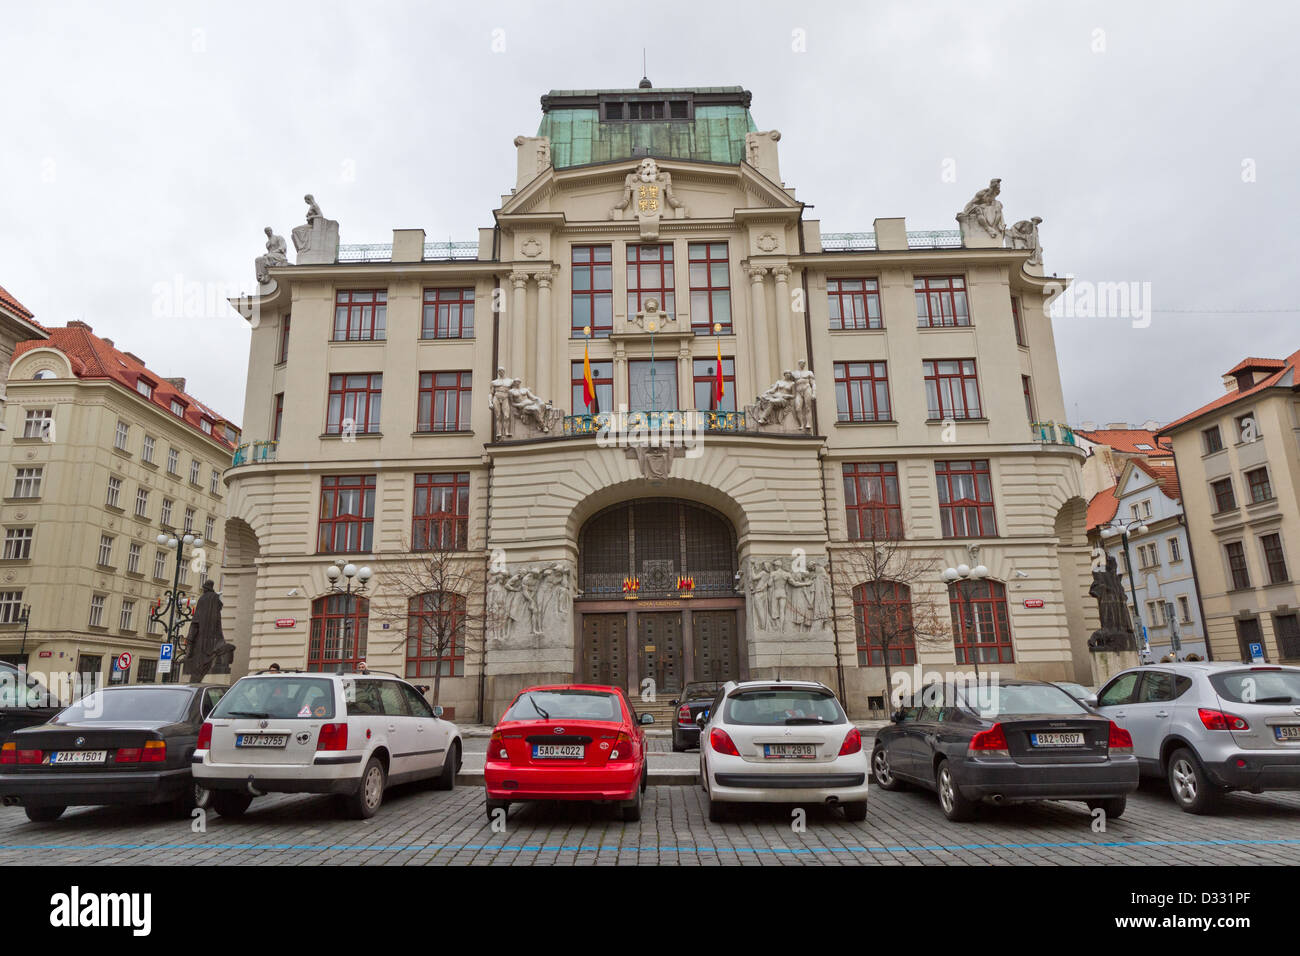 Nova radnice - nouvel hôtel de ville à Prague Banque D'Images